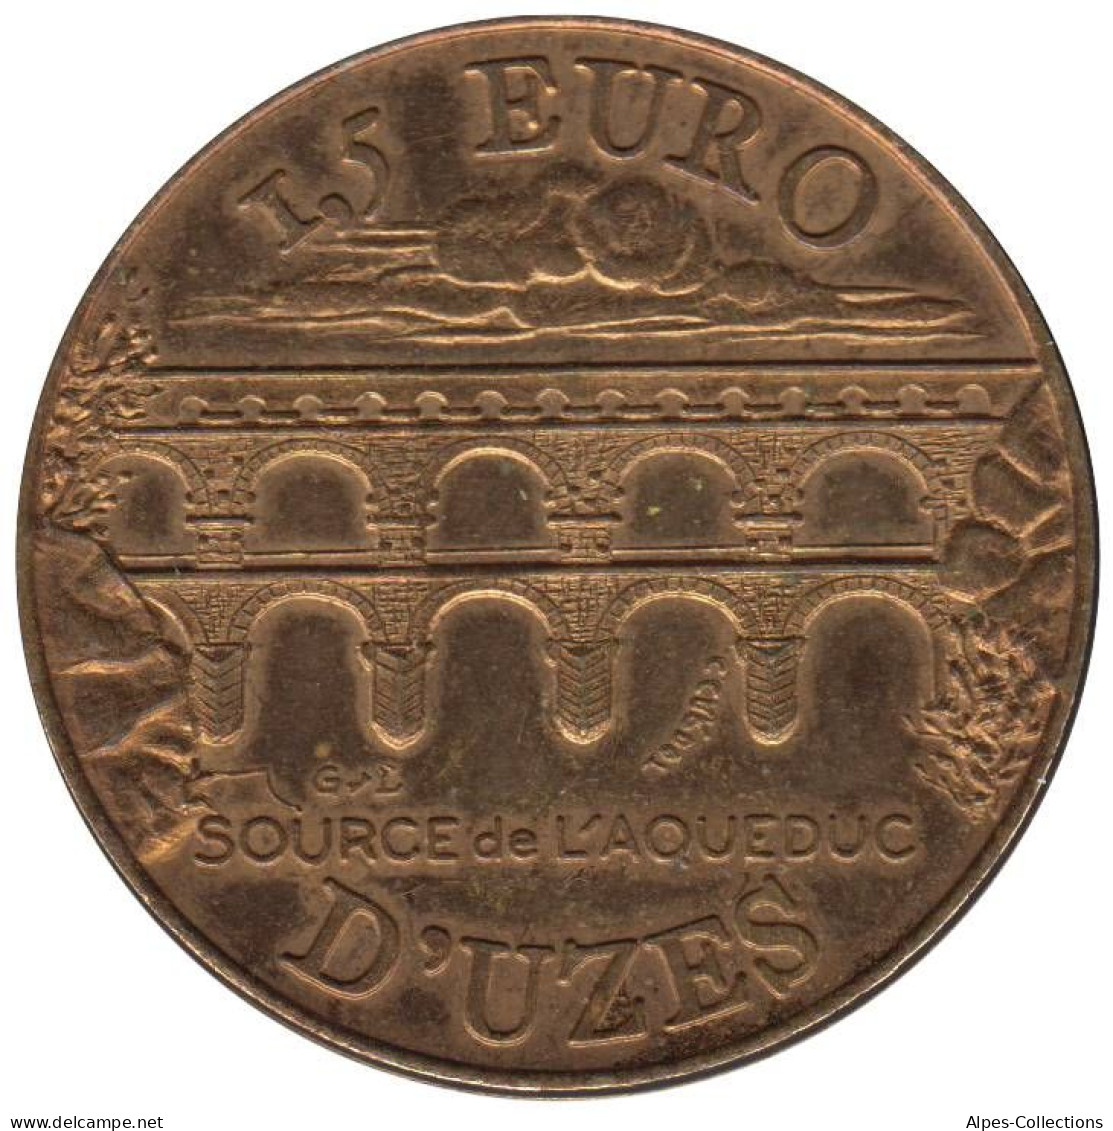 UZES - EU0015.1 - 1,5 EURO DES VILLES - Réf: NR - 1997 - Euro Delle Città